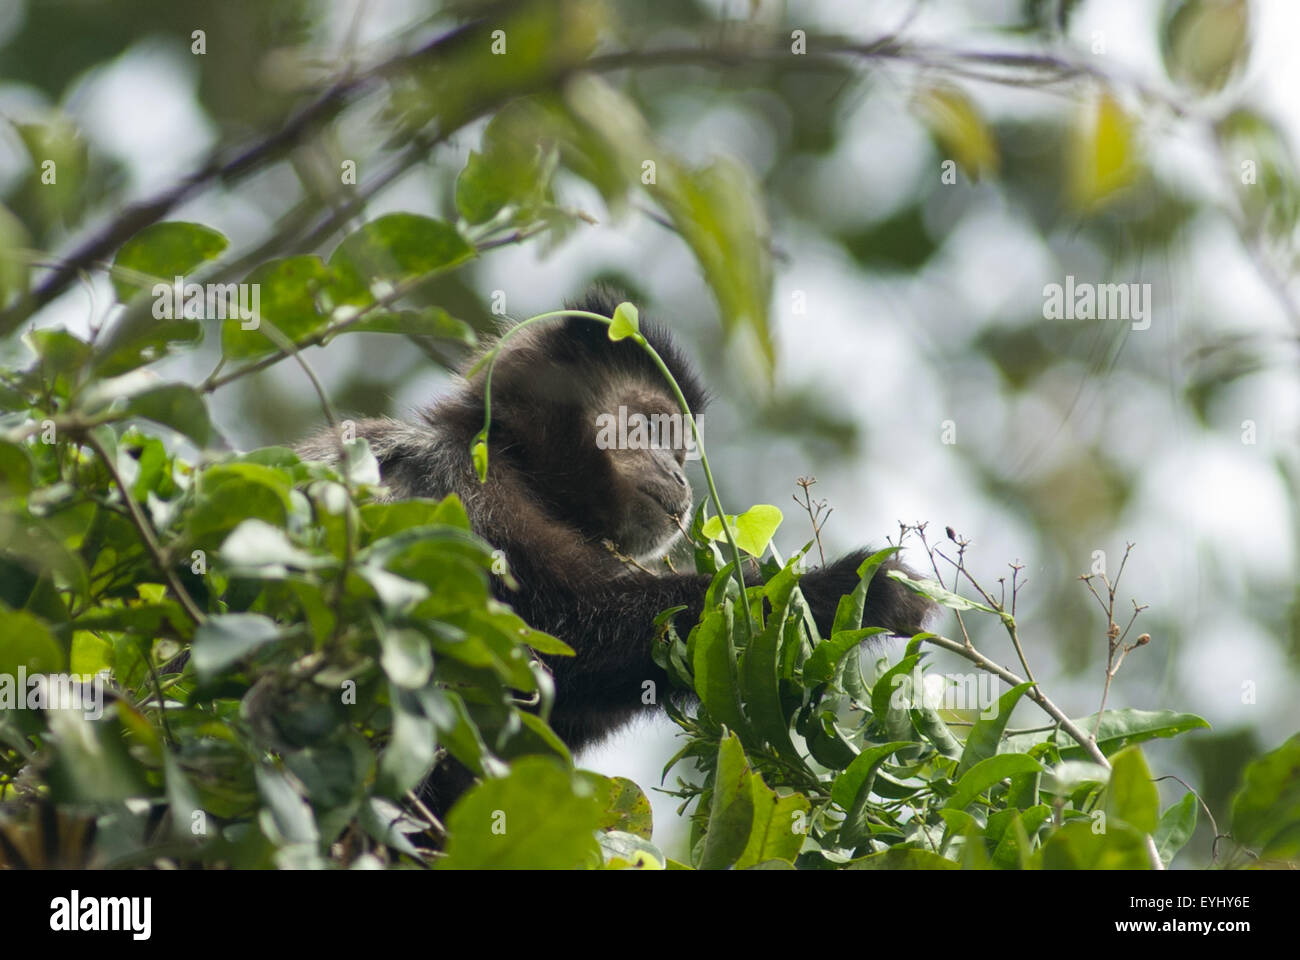 L'État de Parana, Brésil. La forêt Mata Atlantica singe capucin cueillir des baies d'un arbre. Banque D'Images